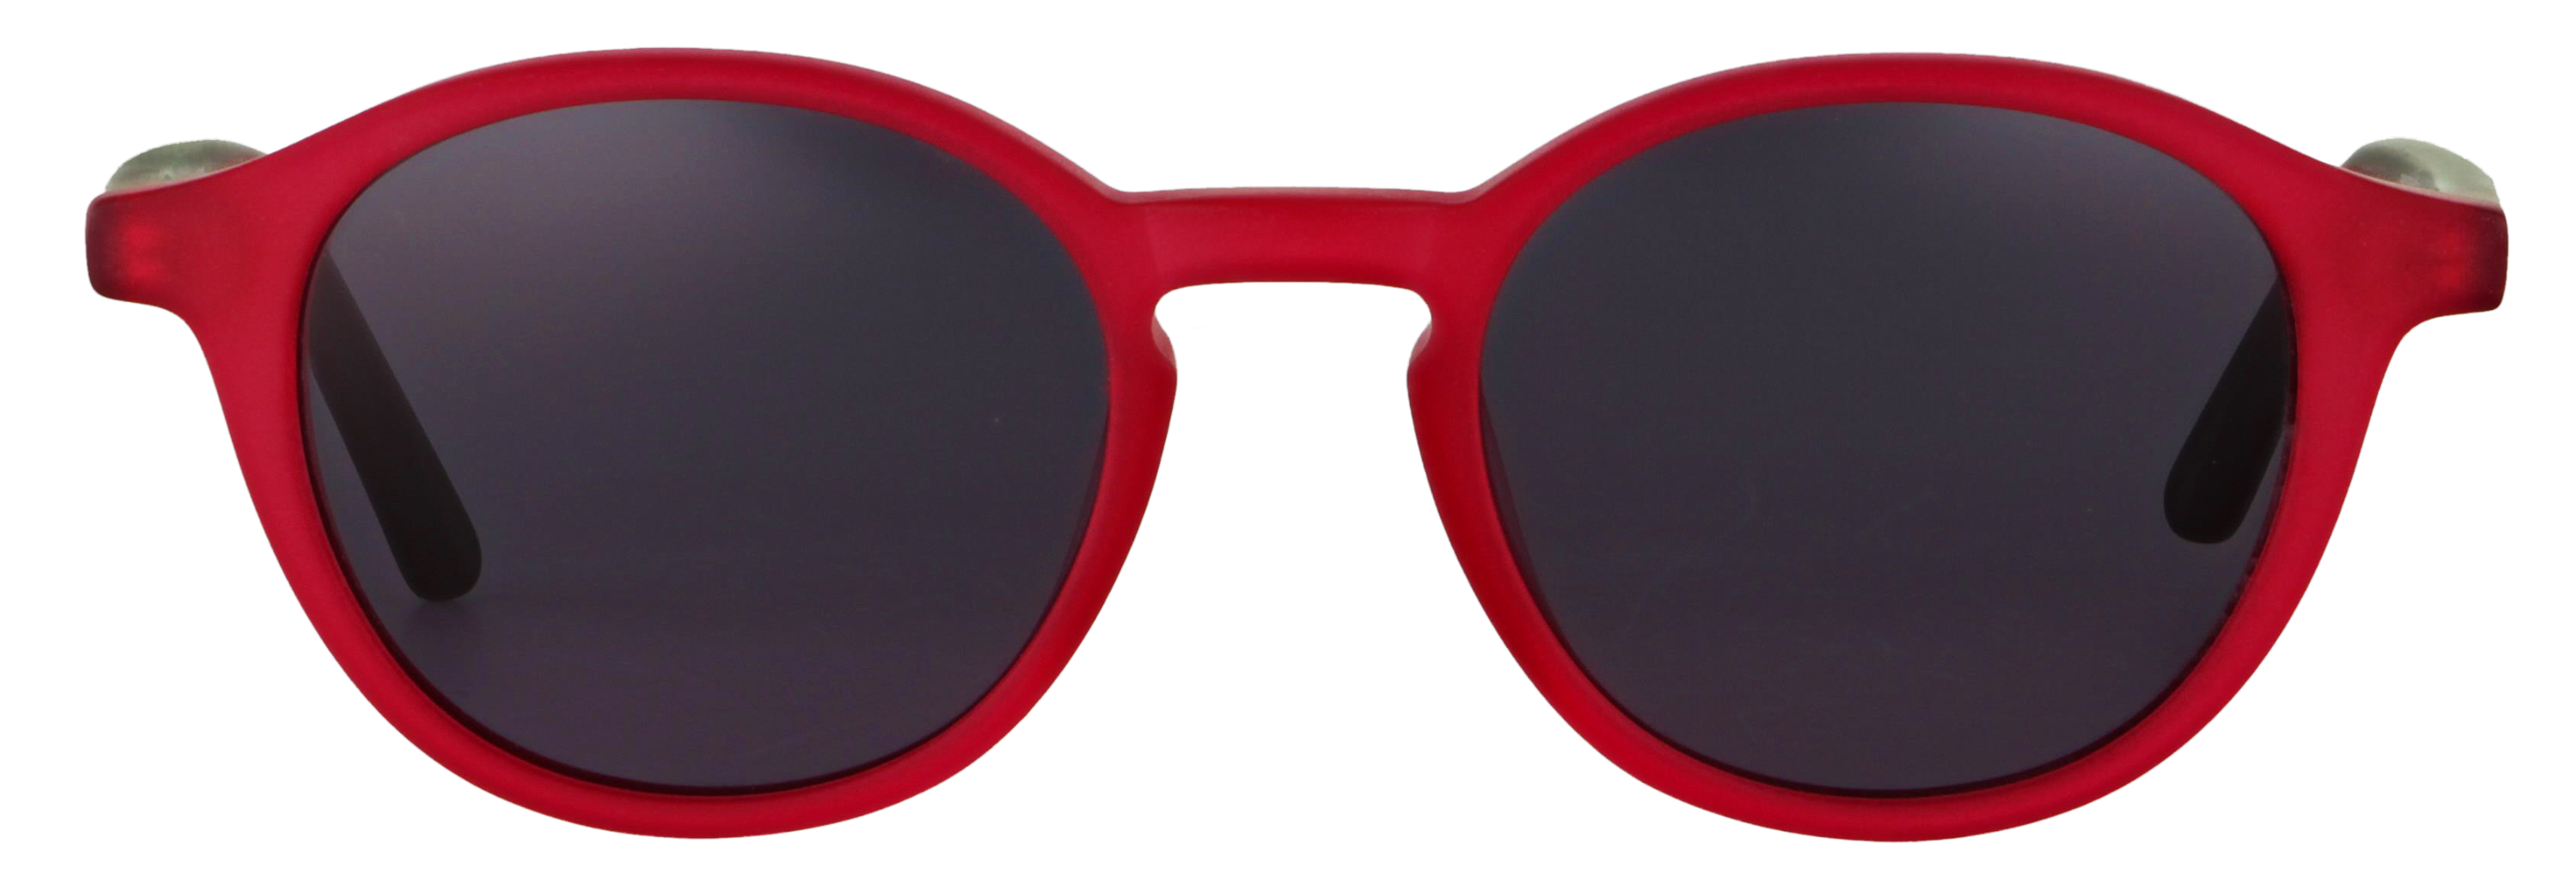 Das Bild zeigt die Sonnenbrille 718753 von der Marke Abele Optik in Rot.